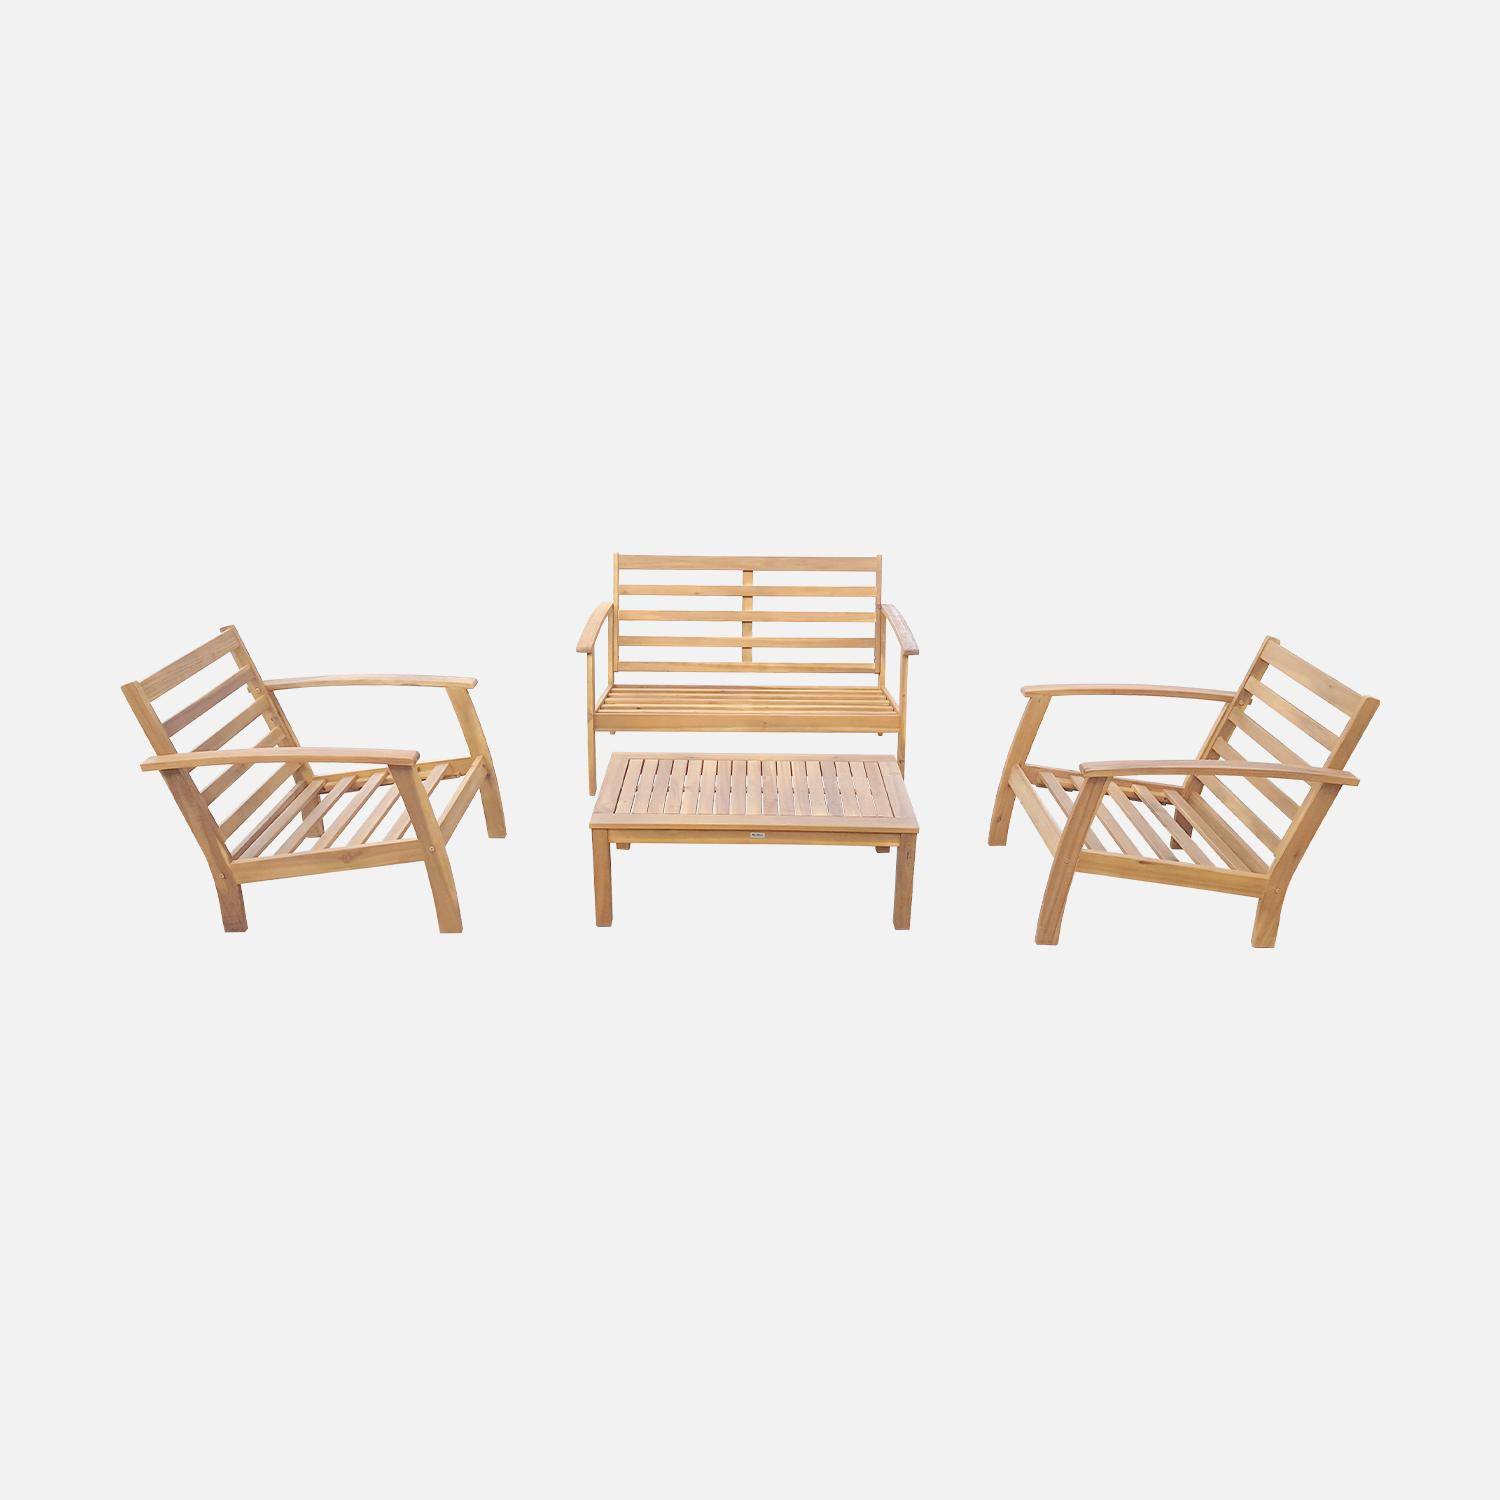 Salon de jardin en bois 4 places - Ushuaïa - Coussins écrus, canapé, fauteuils et table basse en acacia, design,sweeek,Photo6